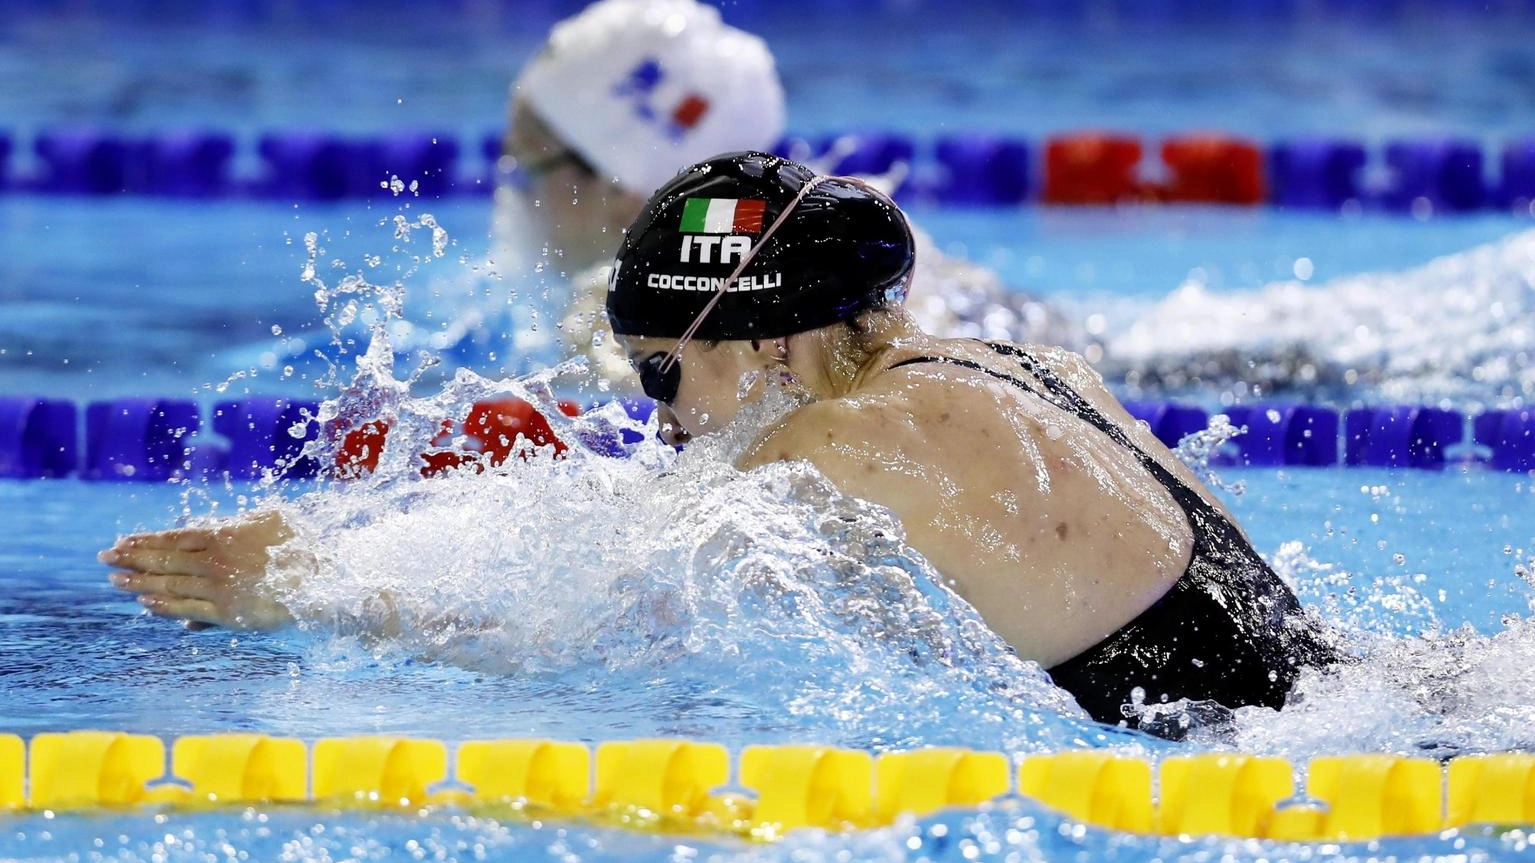 Nuoto: Europei 25 m,4x50 mista donne in finale col miglior tempo